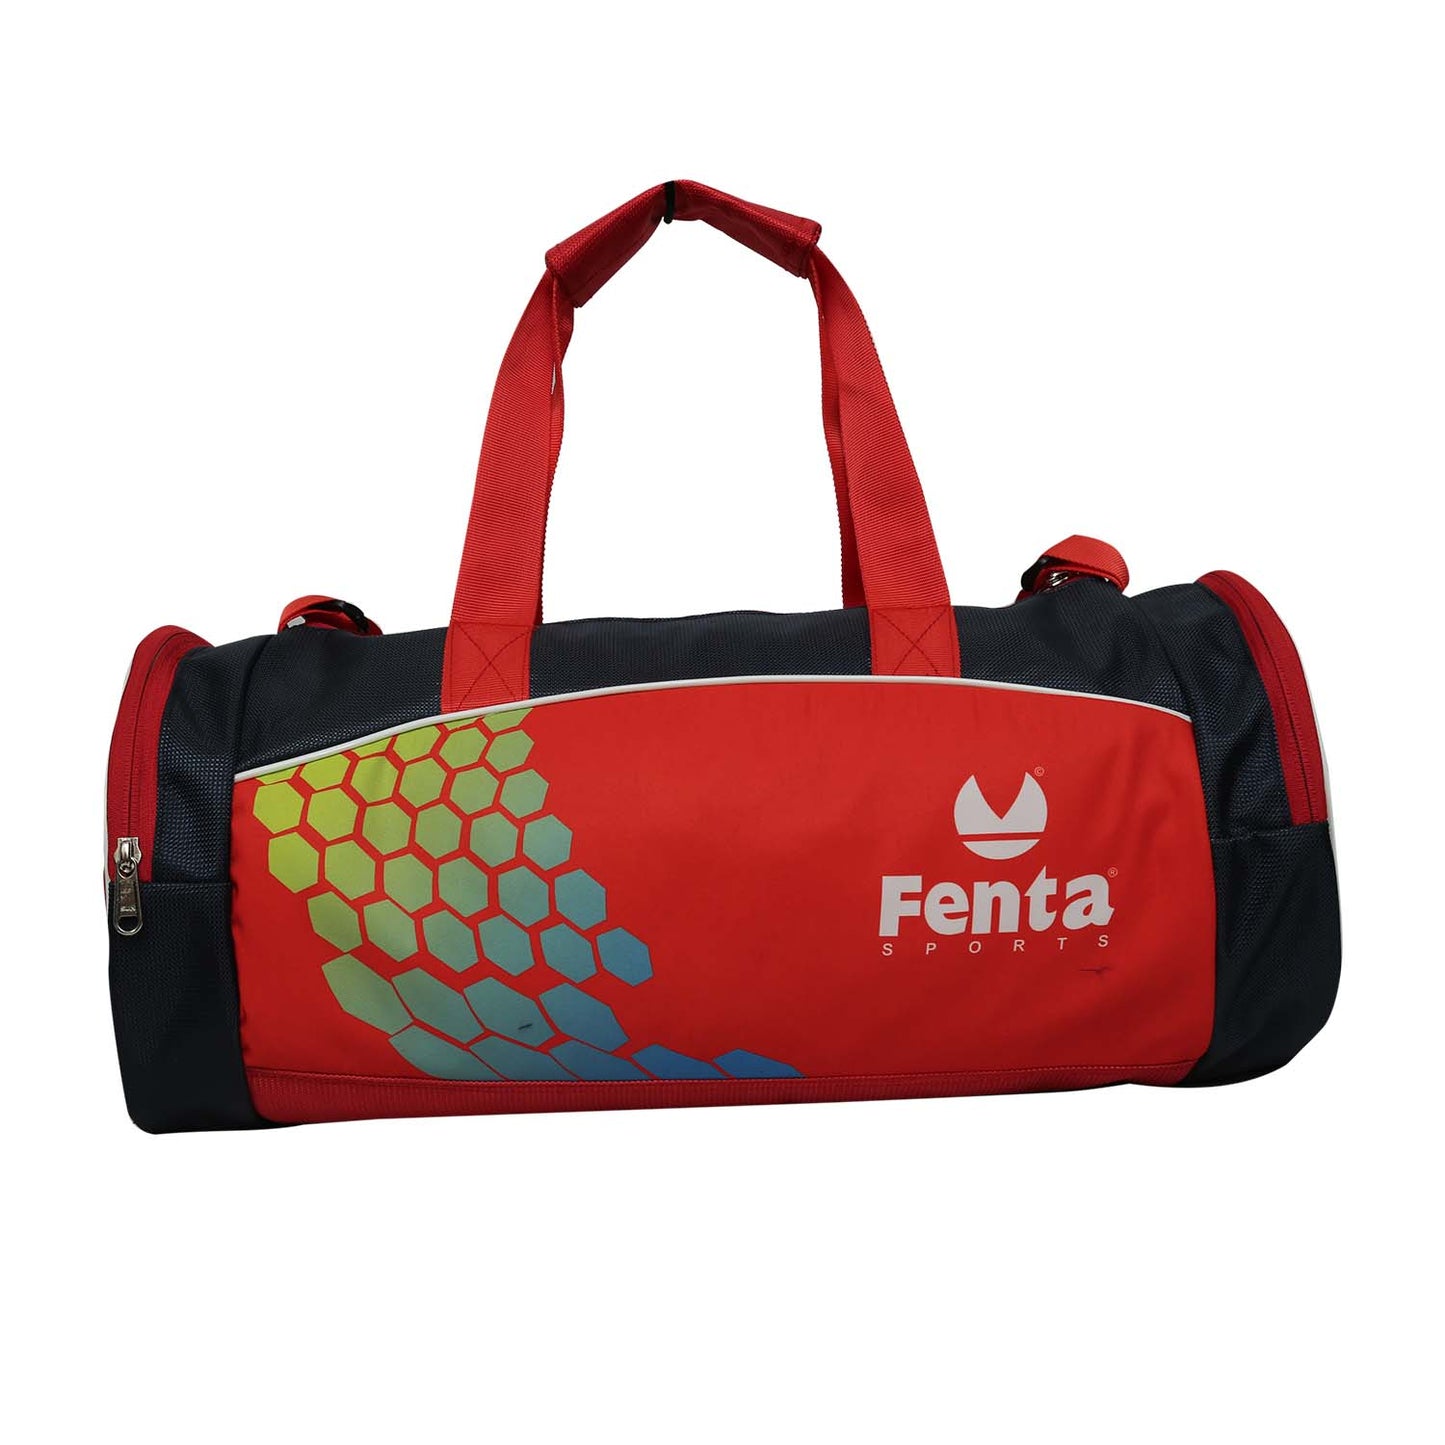 FENTA BOY'S TD-5 Large Red Travel Duffel / Gym Bag